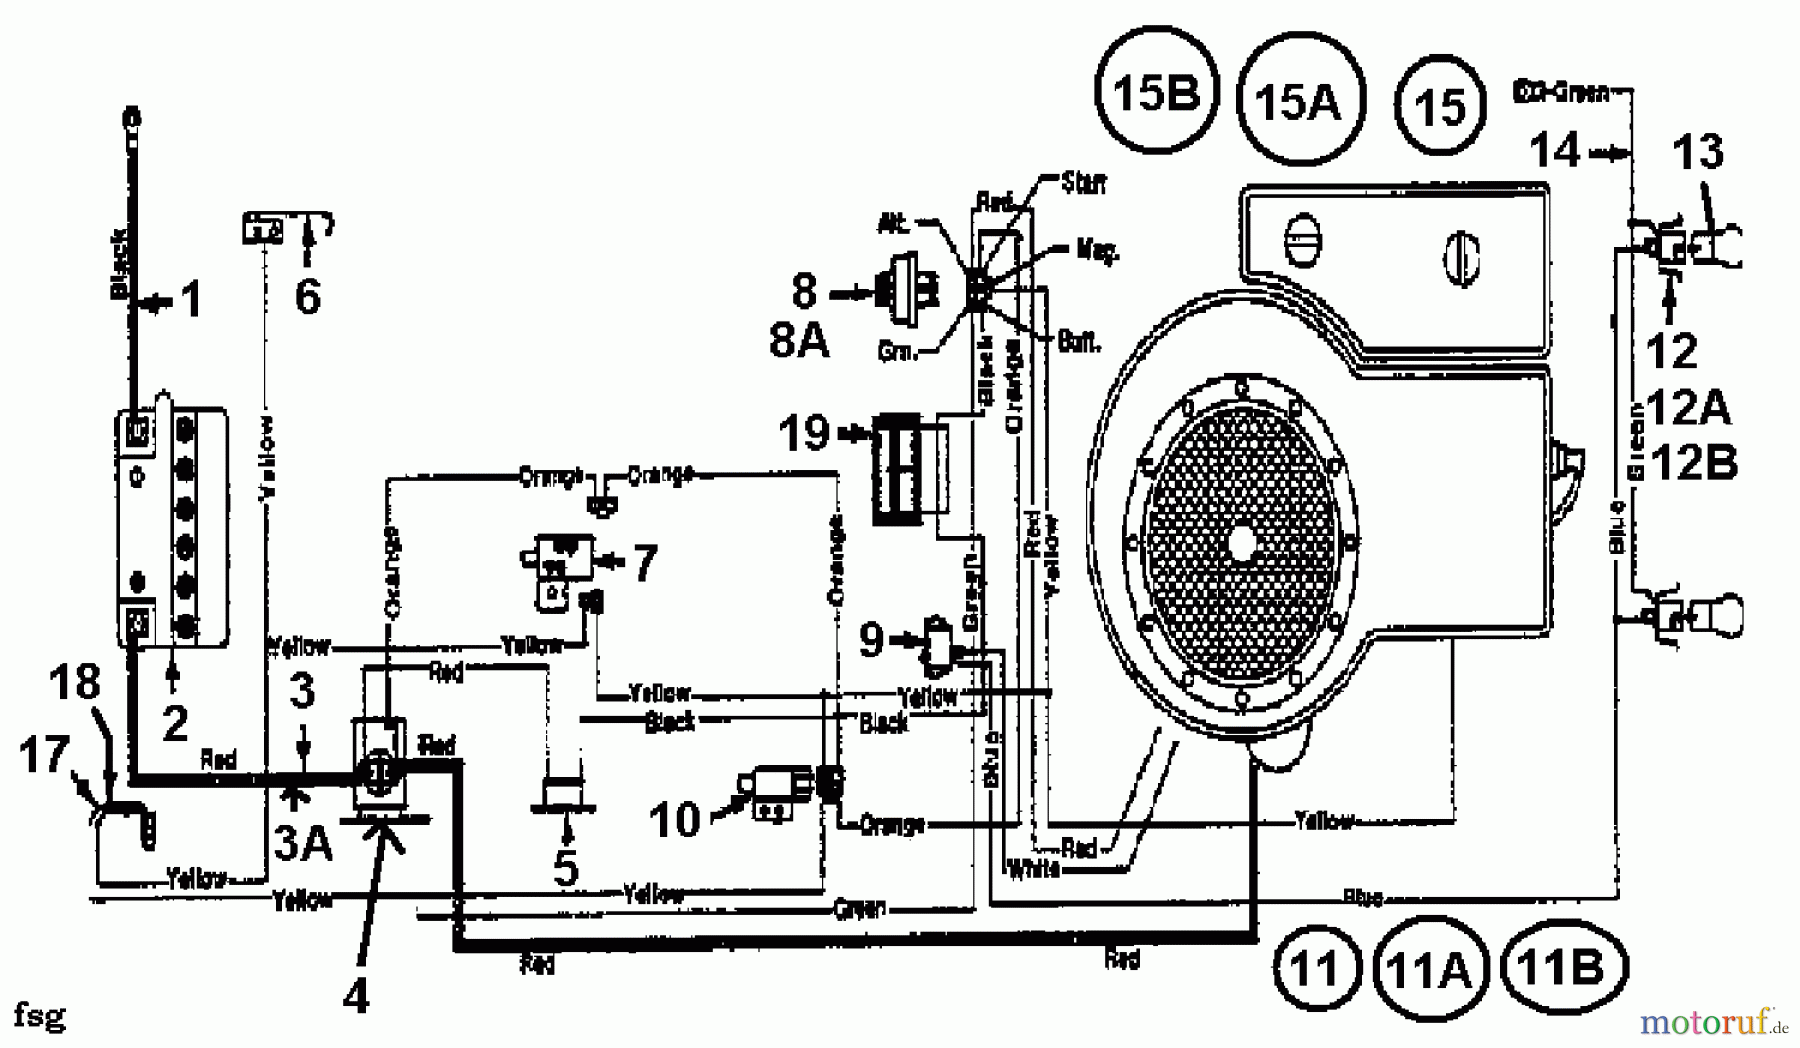  White Tracteurs de pelouse 12/91 133I451E679  (1993) Plan électrique cylindre simple